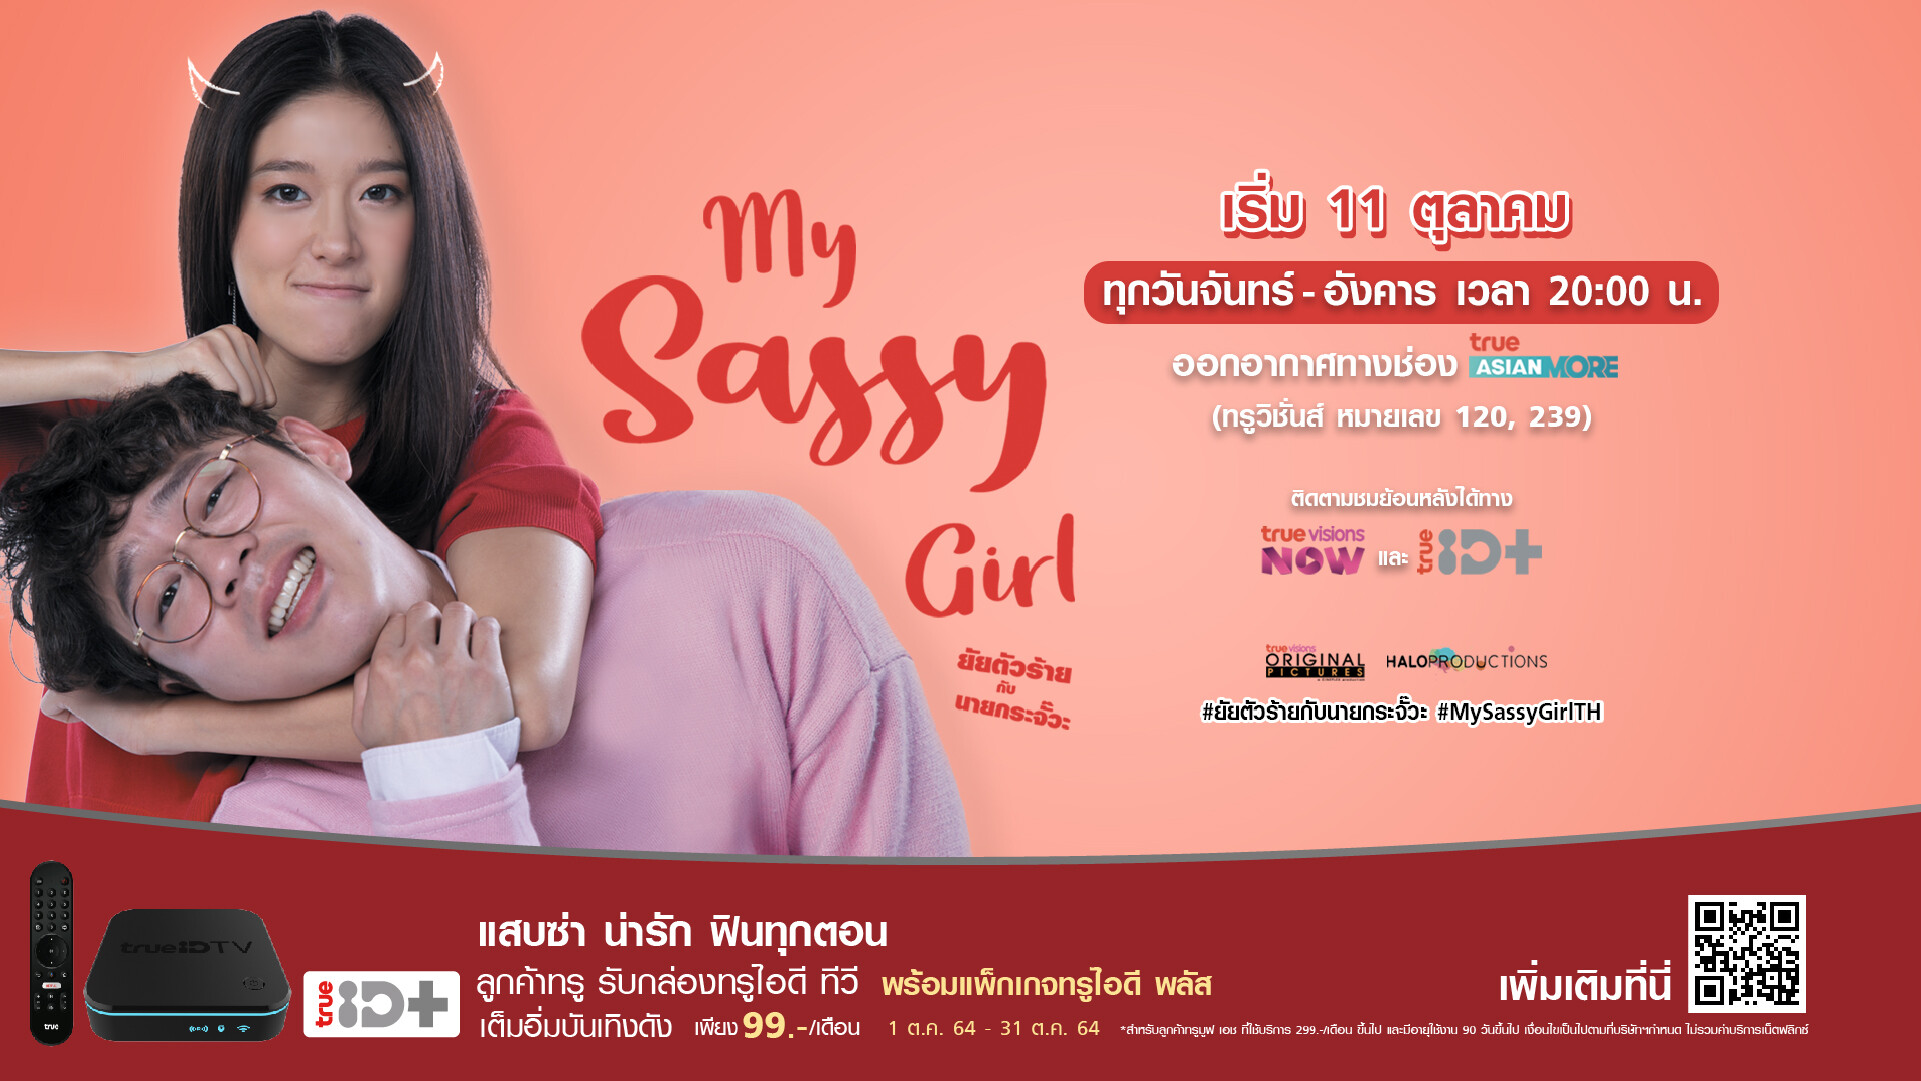 ทรูไอดีส่งซีรี่ส์ใหม่ "My Sassy Girl ยัยตัวร้ายกับนายกระจั๊วะ" ให้คนไทยหายเครียด!